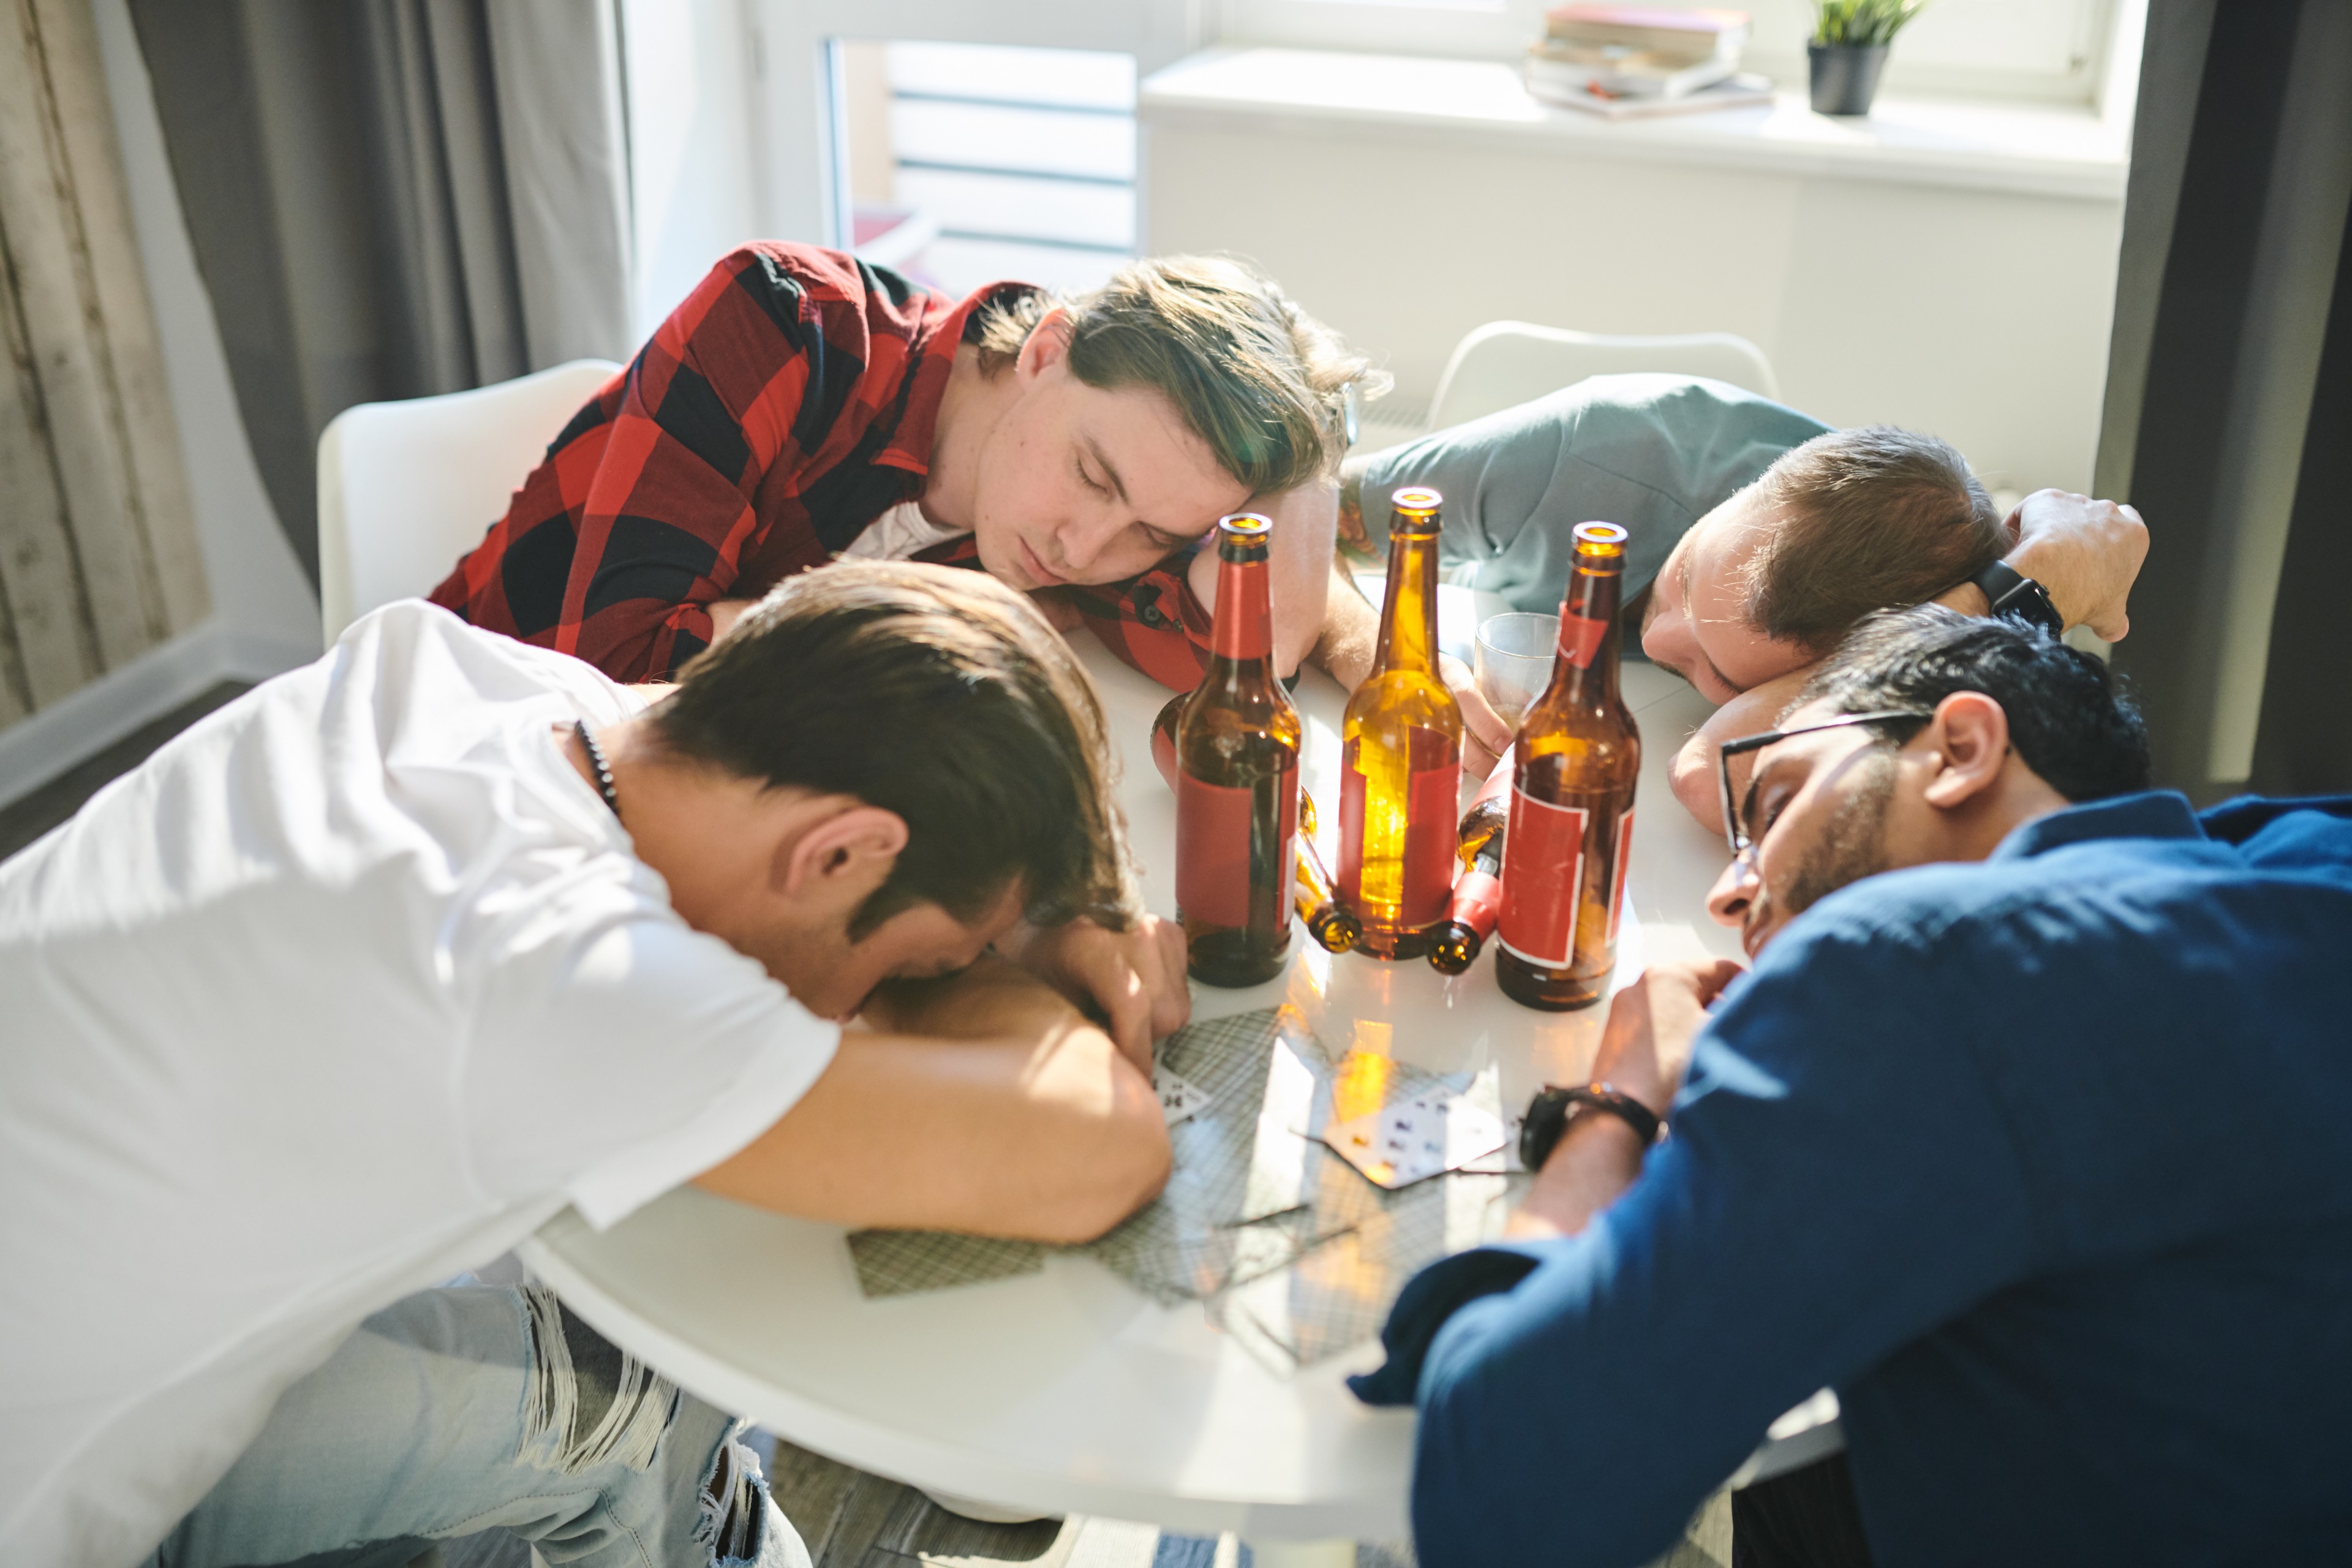 La « paralysie du samedi » soir peut être liée à la consommation excessive d'alcool ou à une fatigue extrême. © Seventyfour, Adobe Stock